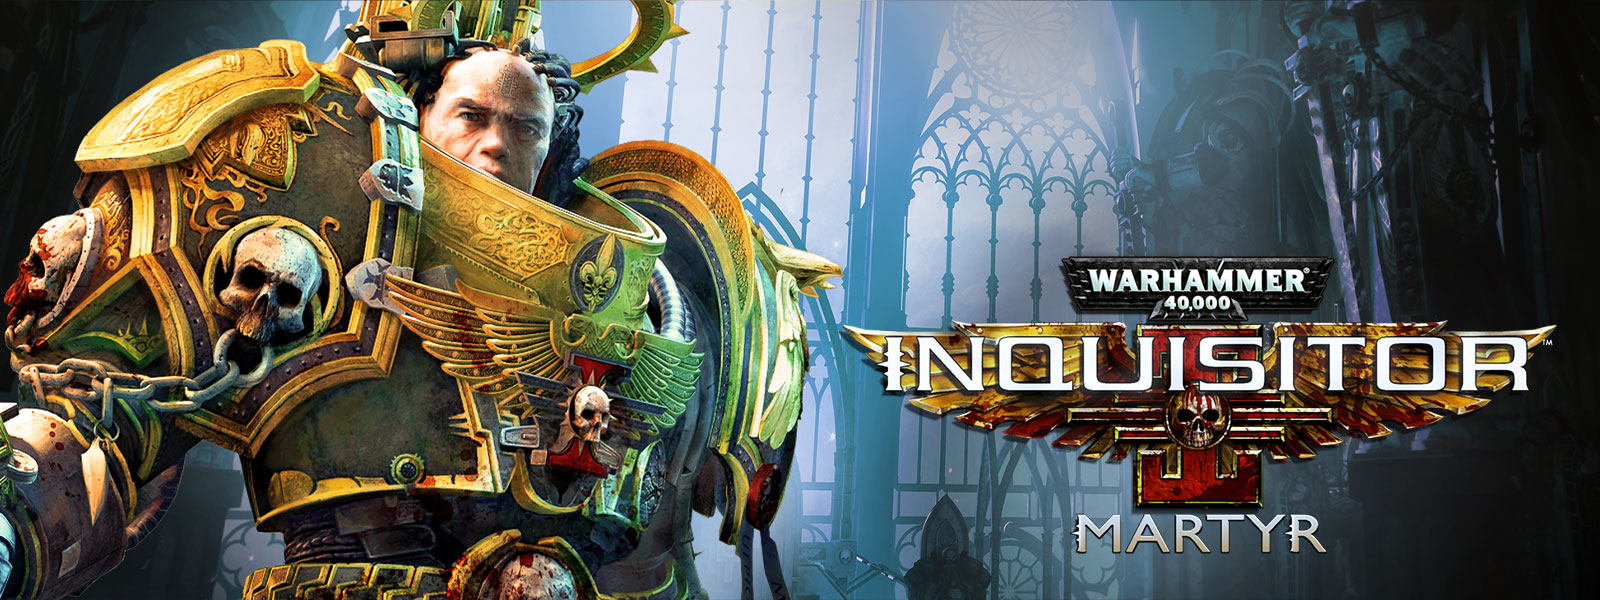 Warhammer 40,000: Inquisitor - Martyr, Um Inquisidor parado em uma catedral extravagante.